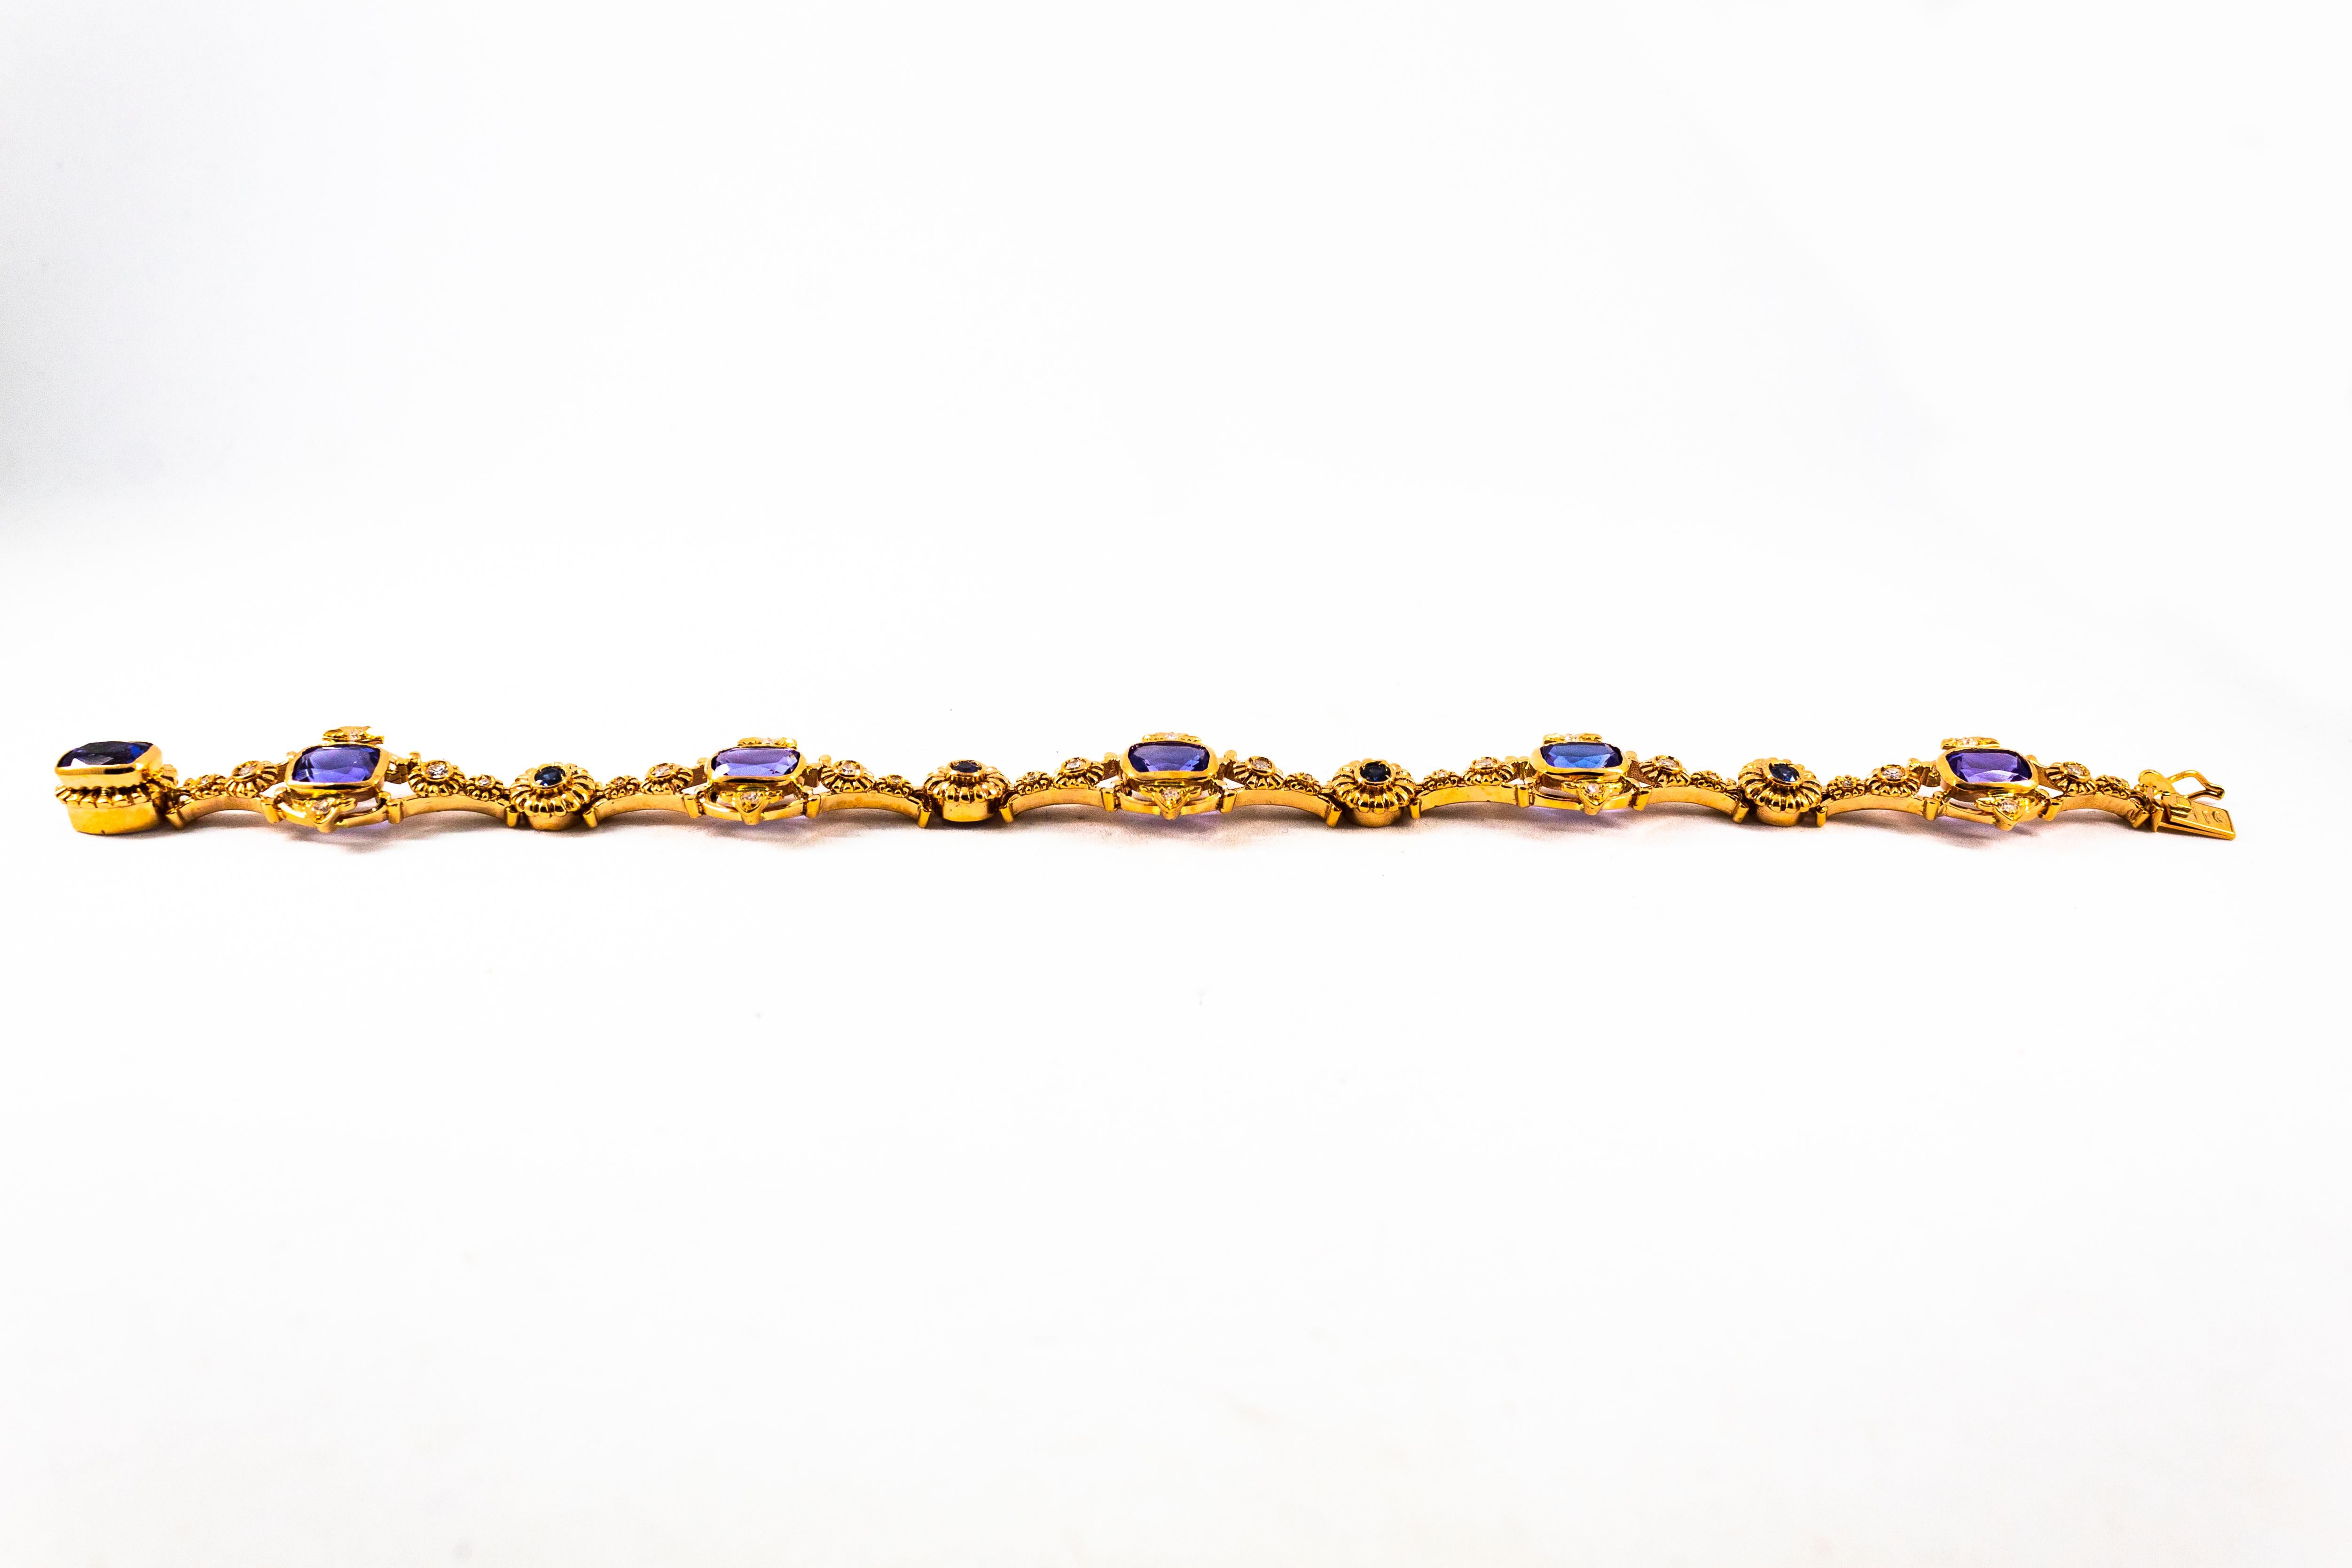 Dieses Armband ist aus 14K Gelbgold gefertigt.
Dieses Armband hat 0.60 Karat Diamanten im weißen Brillantschliff.
Dieses Armband besteht aus 0,30 Karat blauen Saphiren.
Dieses Armband hat 6,00 Karat natürlichen Tansanit.

Dieses Armband ist auch mit